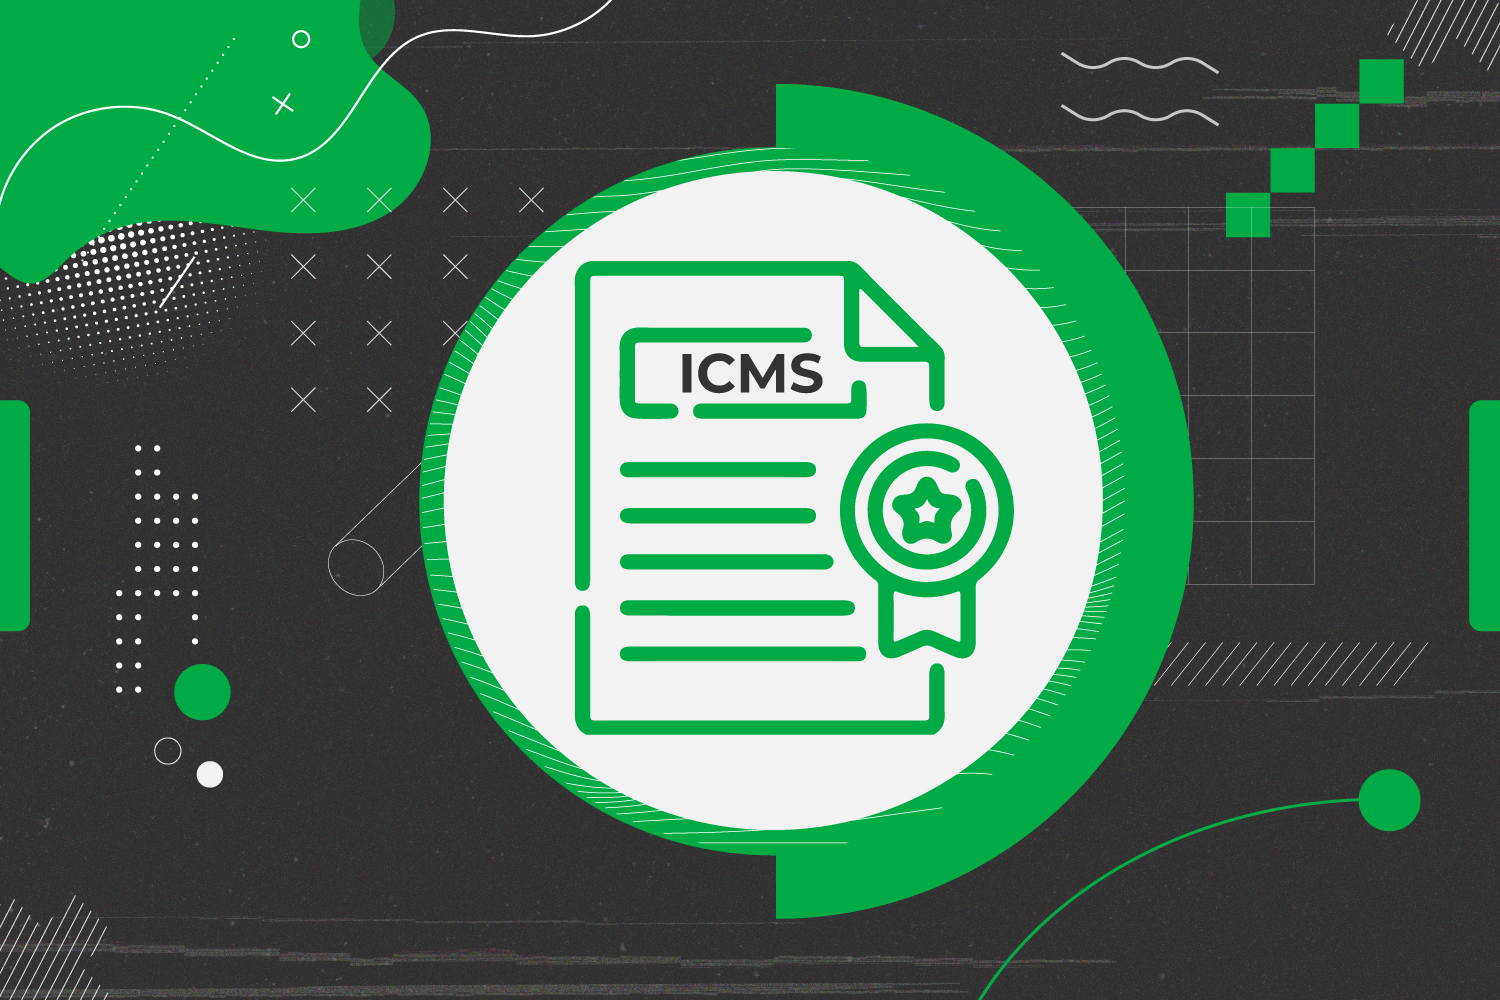 ICMS Diferença entre Antecipação e Substituição Tributária